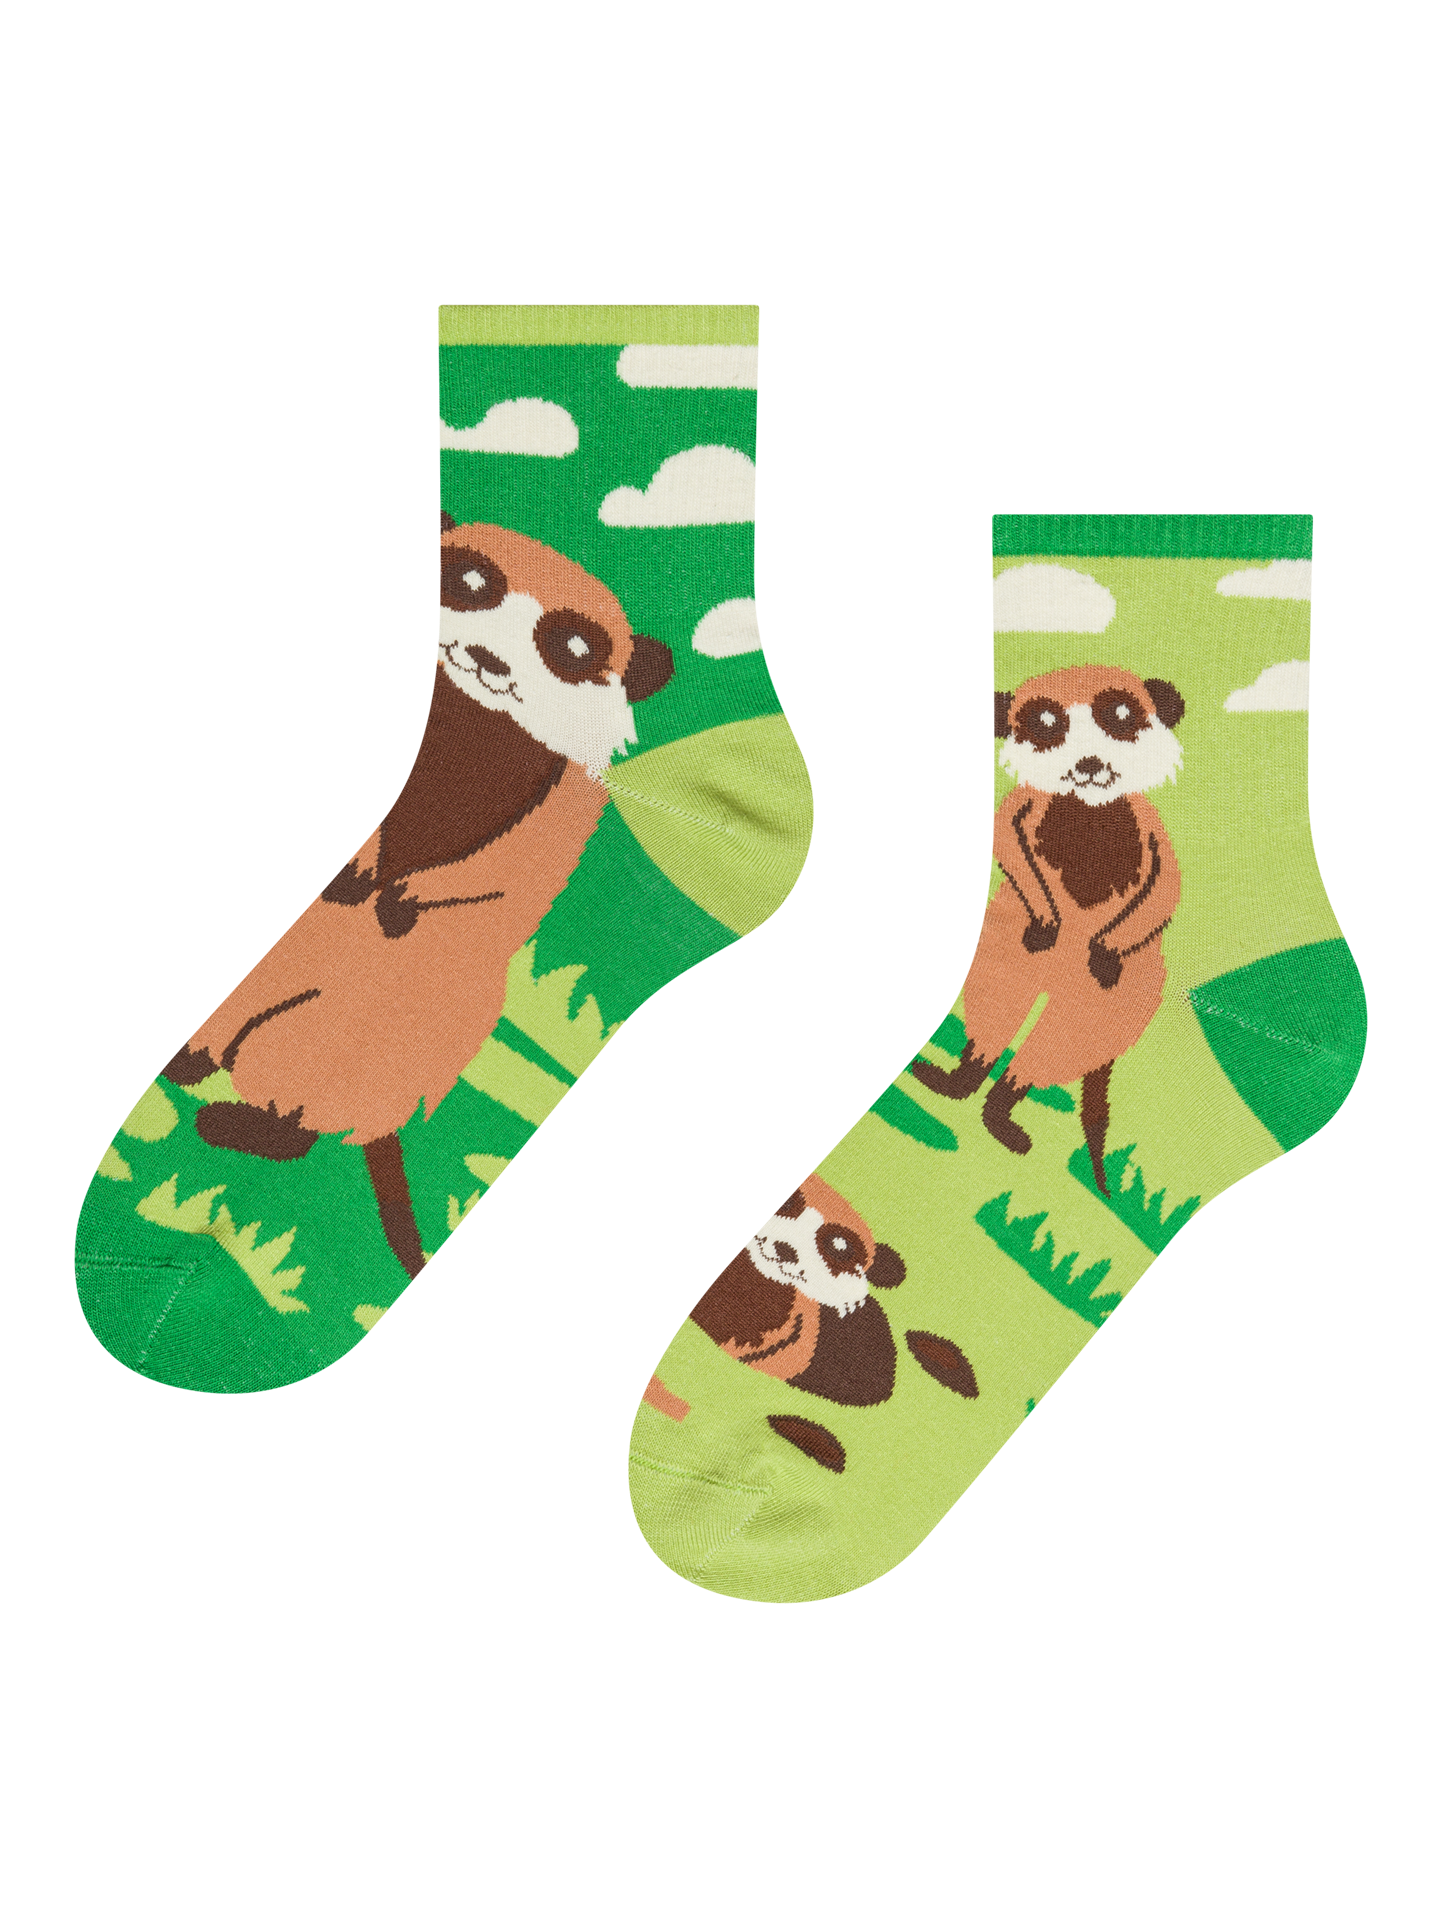 Crew Socks Meerkats